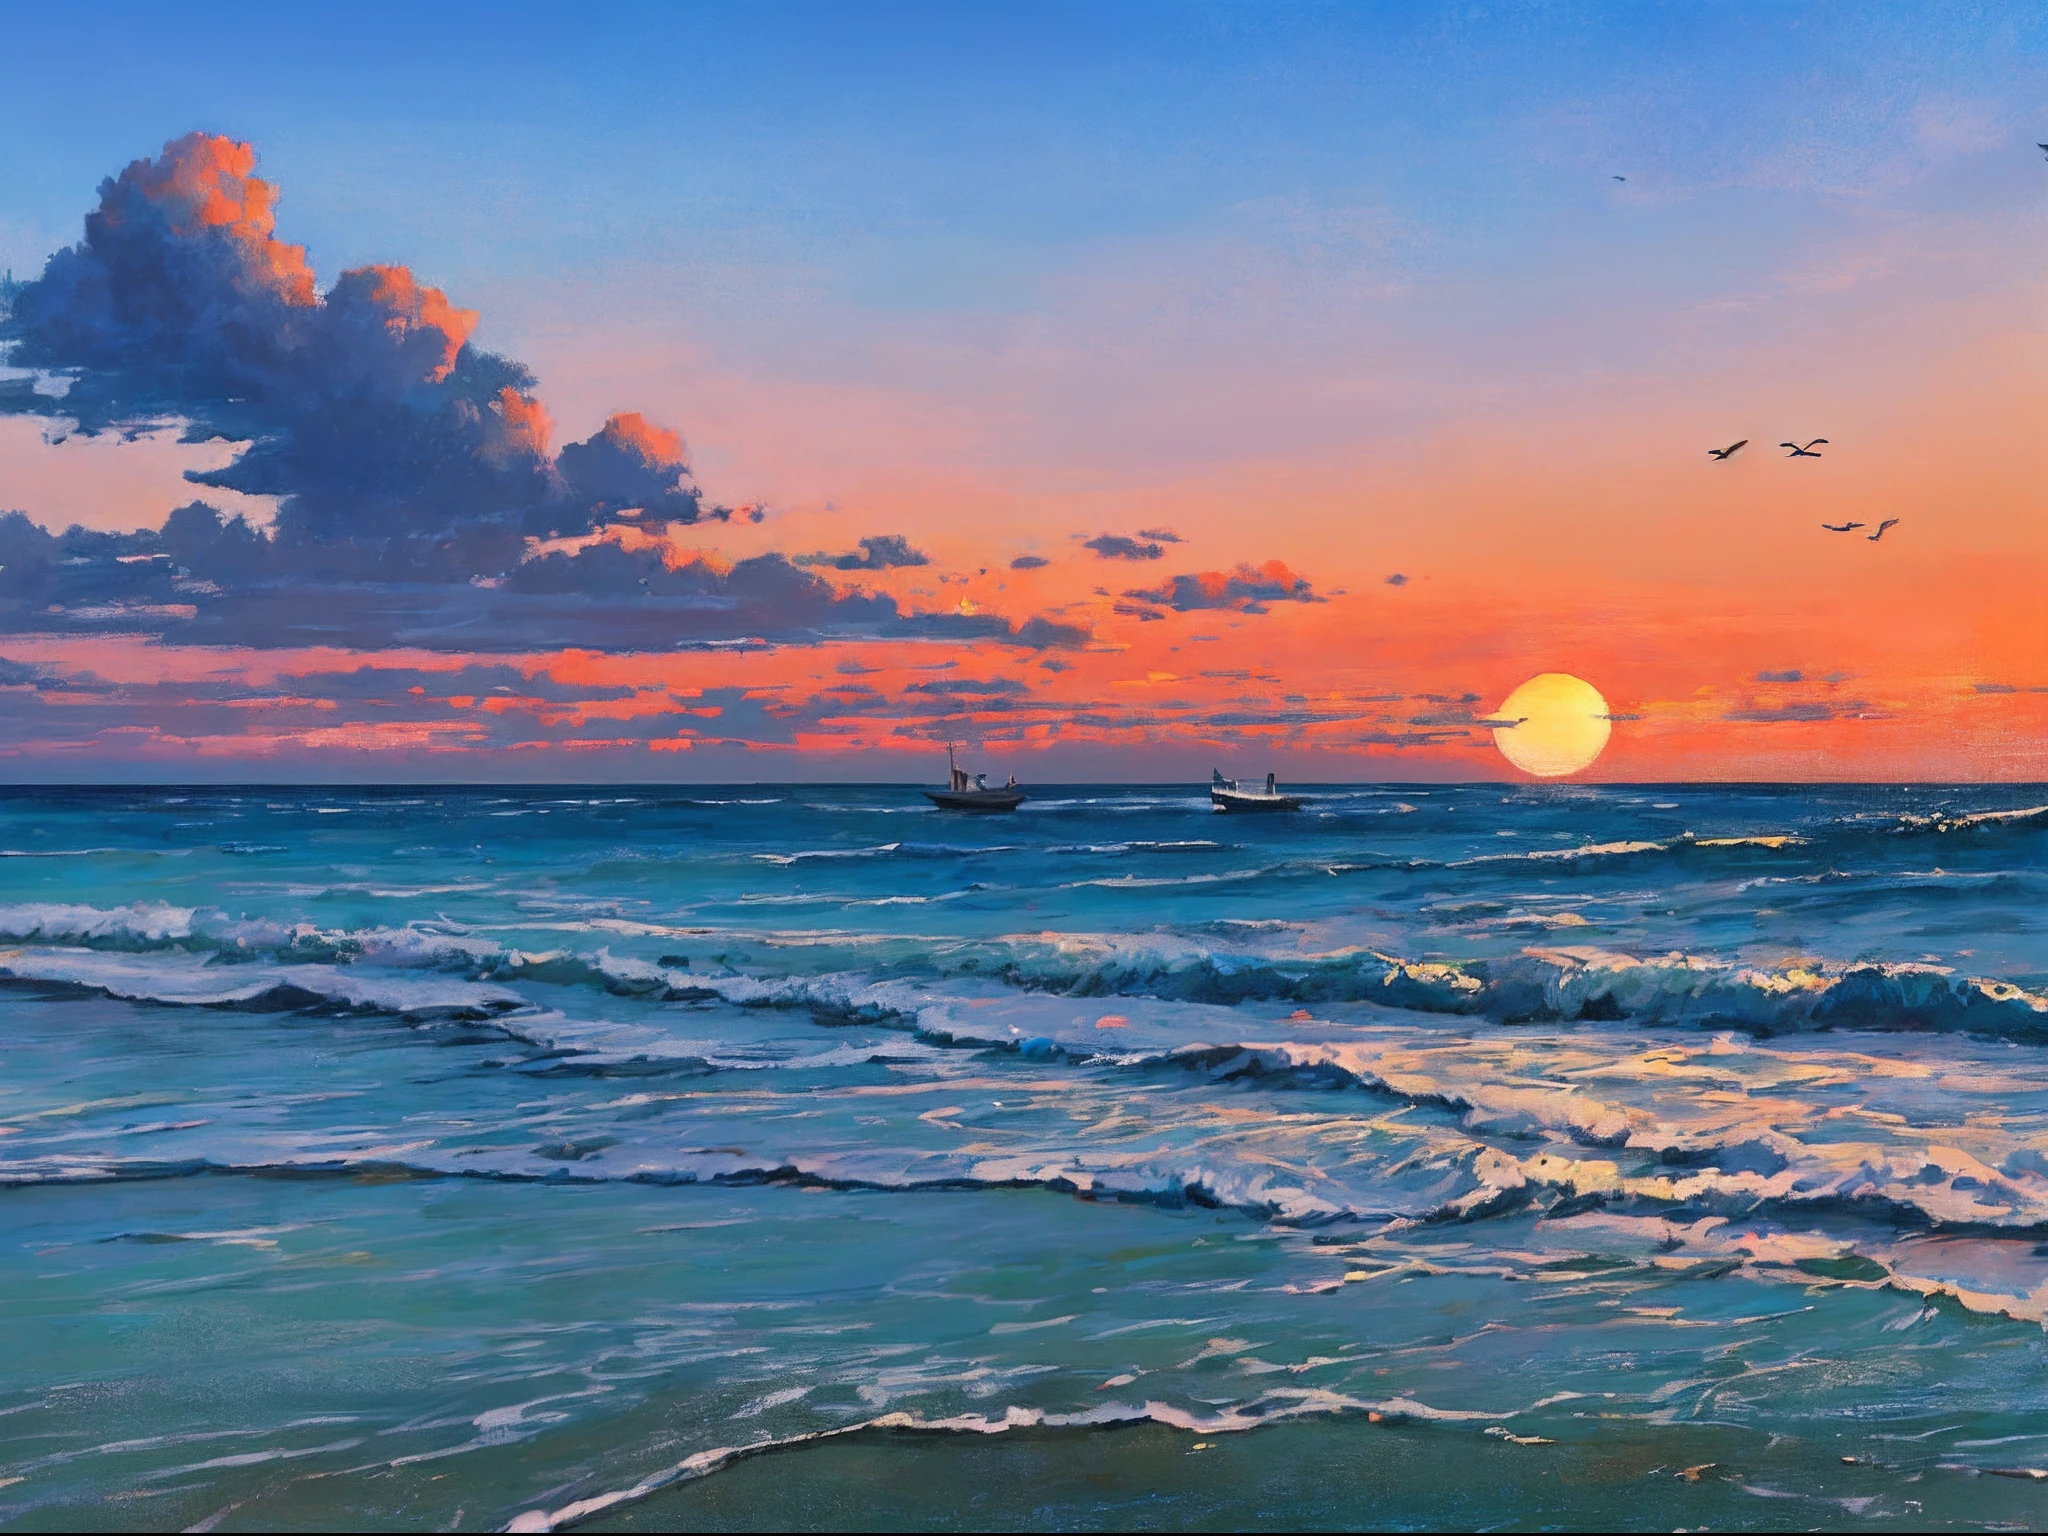 "Impressionante pintura a óleo da paisagem da praia com um nascer do sol tranquilo, ondas suaves, um barco distante, uma pitoresca torre de vigia, nuvens, e silhuetas graciosas de pássaros voando no céu."